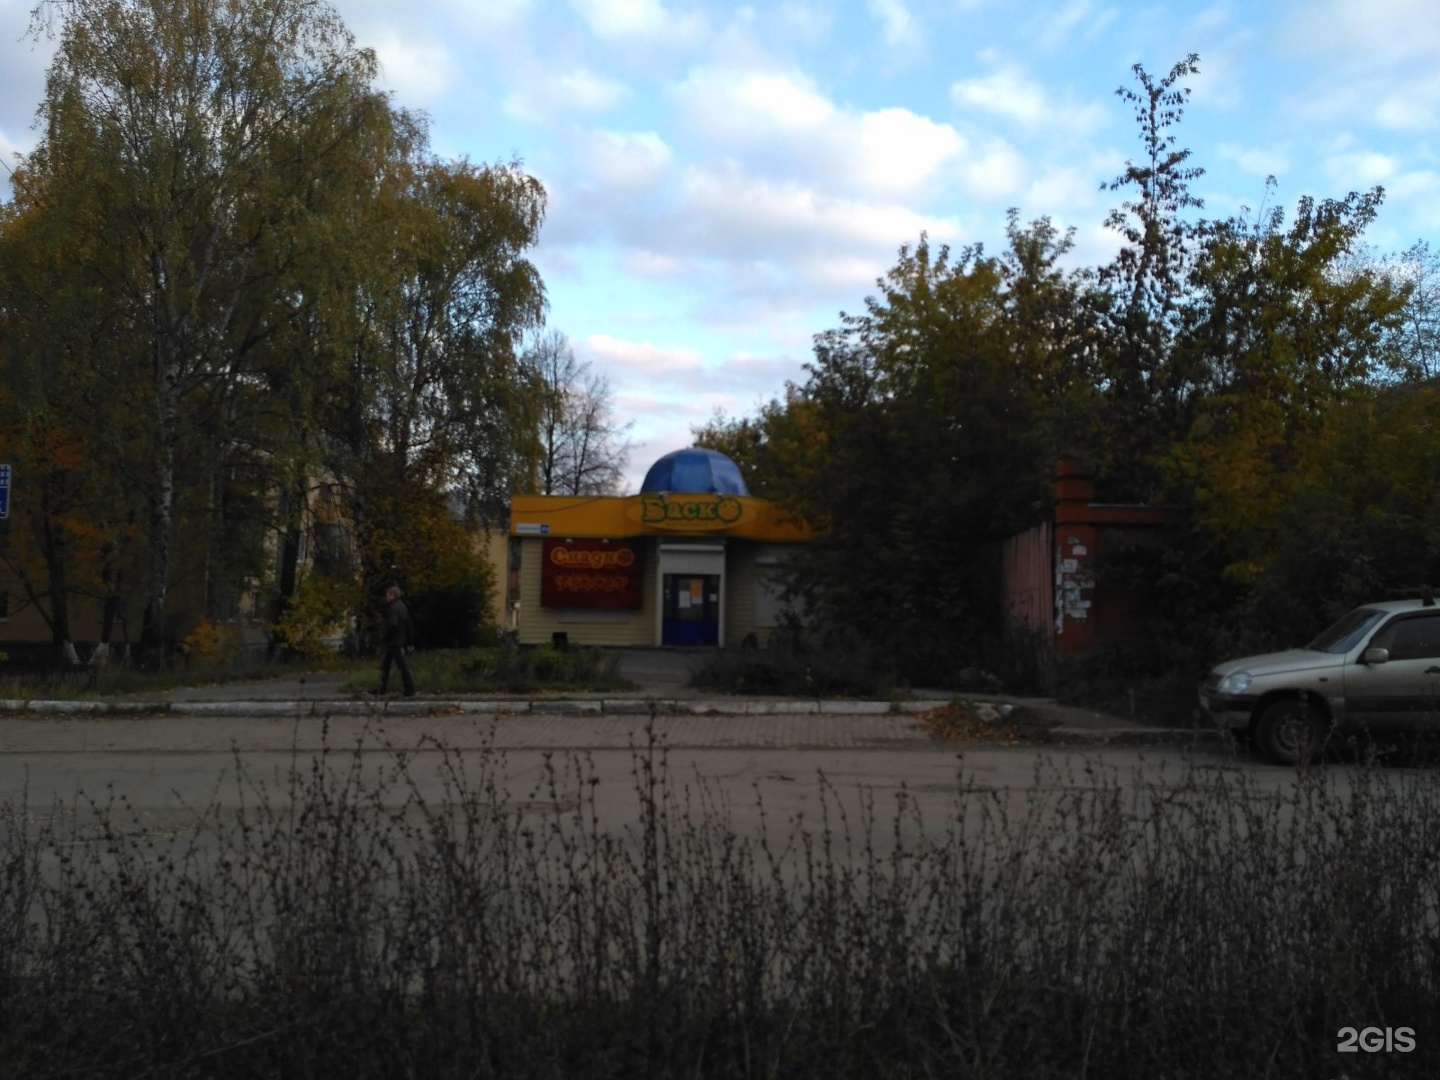 Магазин улица орджоникидзе